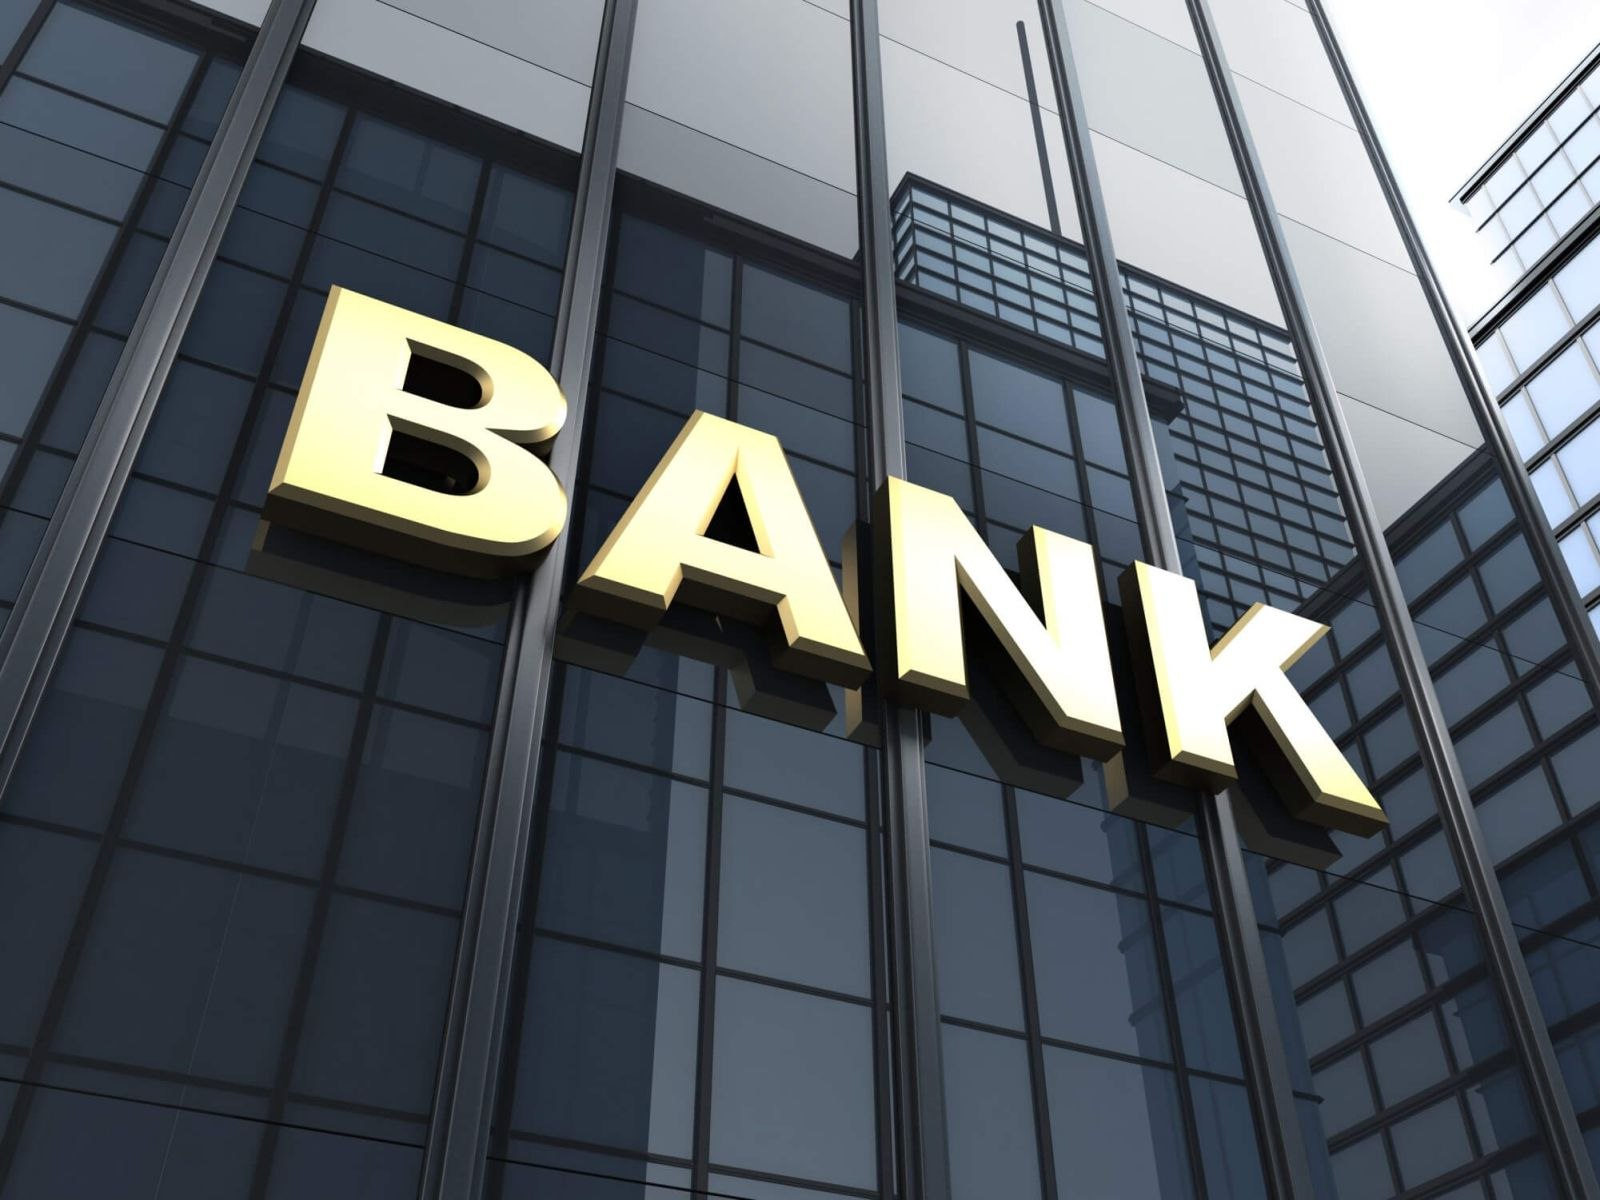 Azərbaycanda bank sektorunun mənfəəti 1 milyard manata yaxınlaşdı